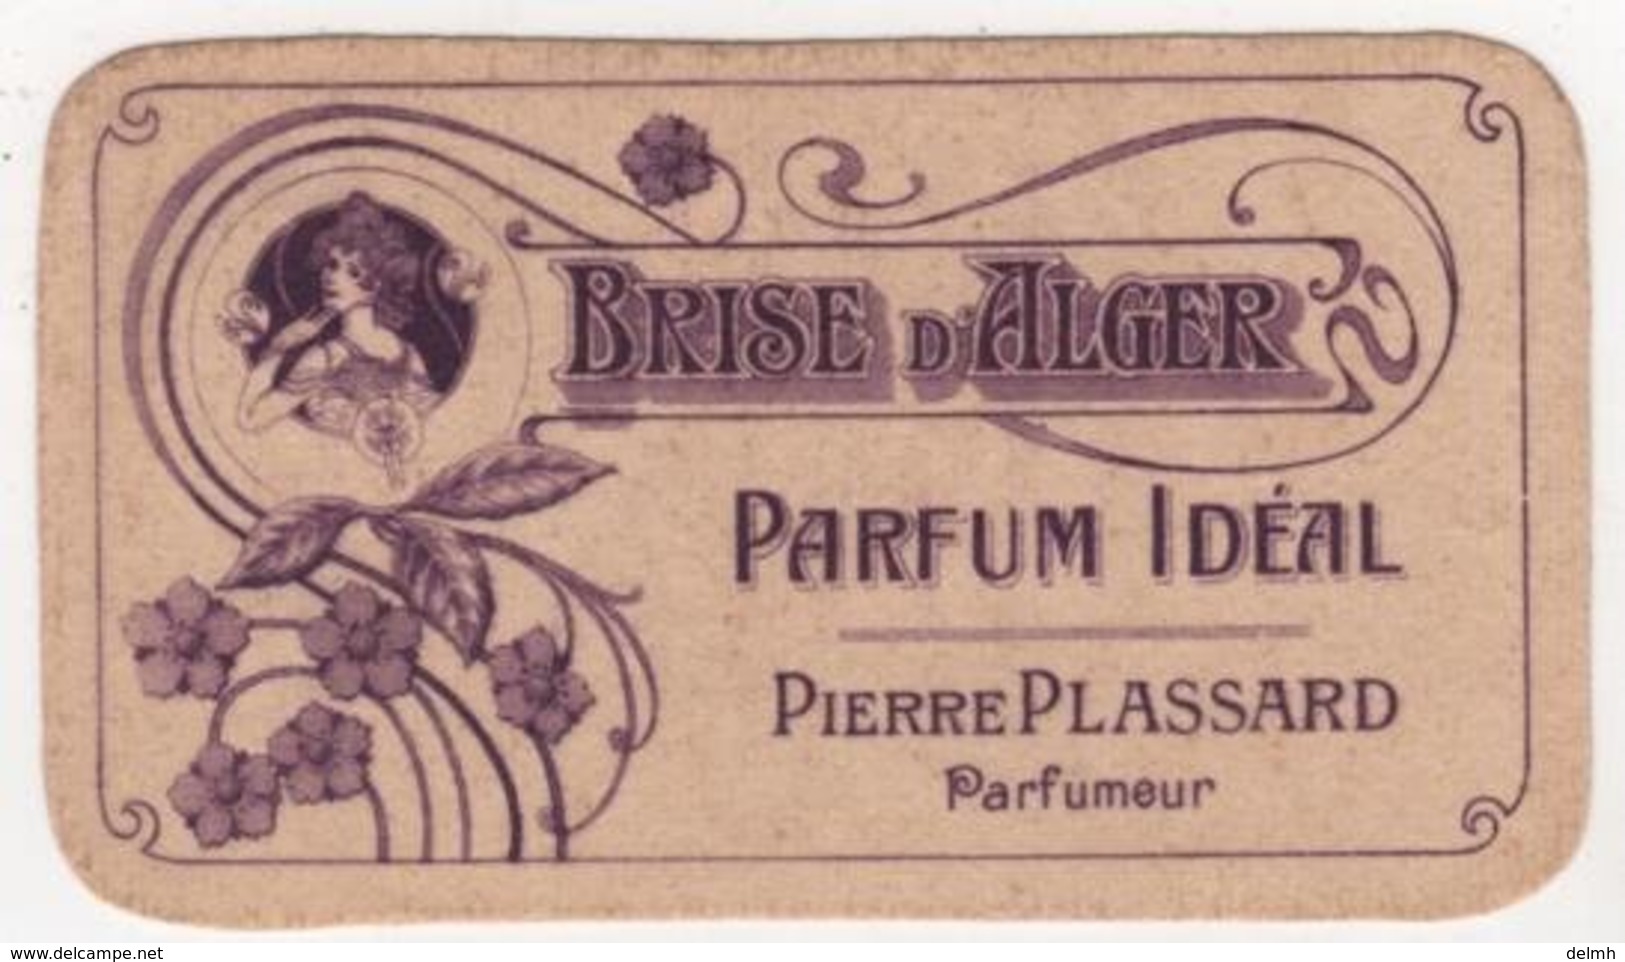 CARTE PARFUMEE Ancienne Brise D'Alger Parfum Idéal Pierre Plassard Parfumeur - Anciennes (jusque 1960)